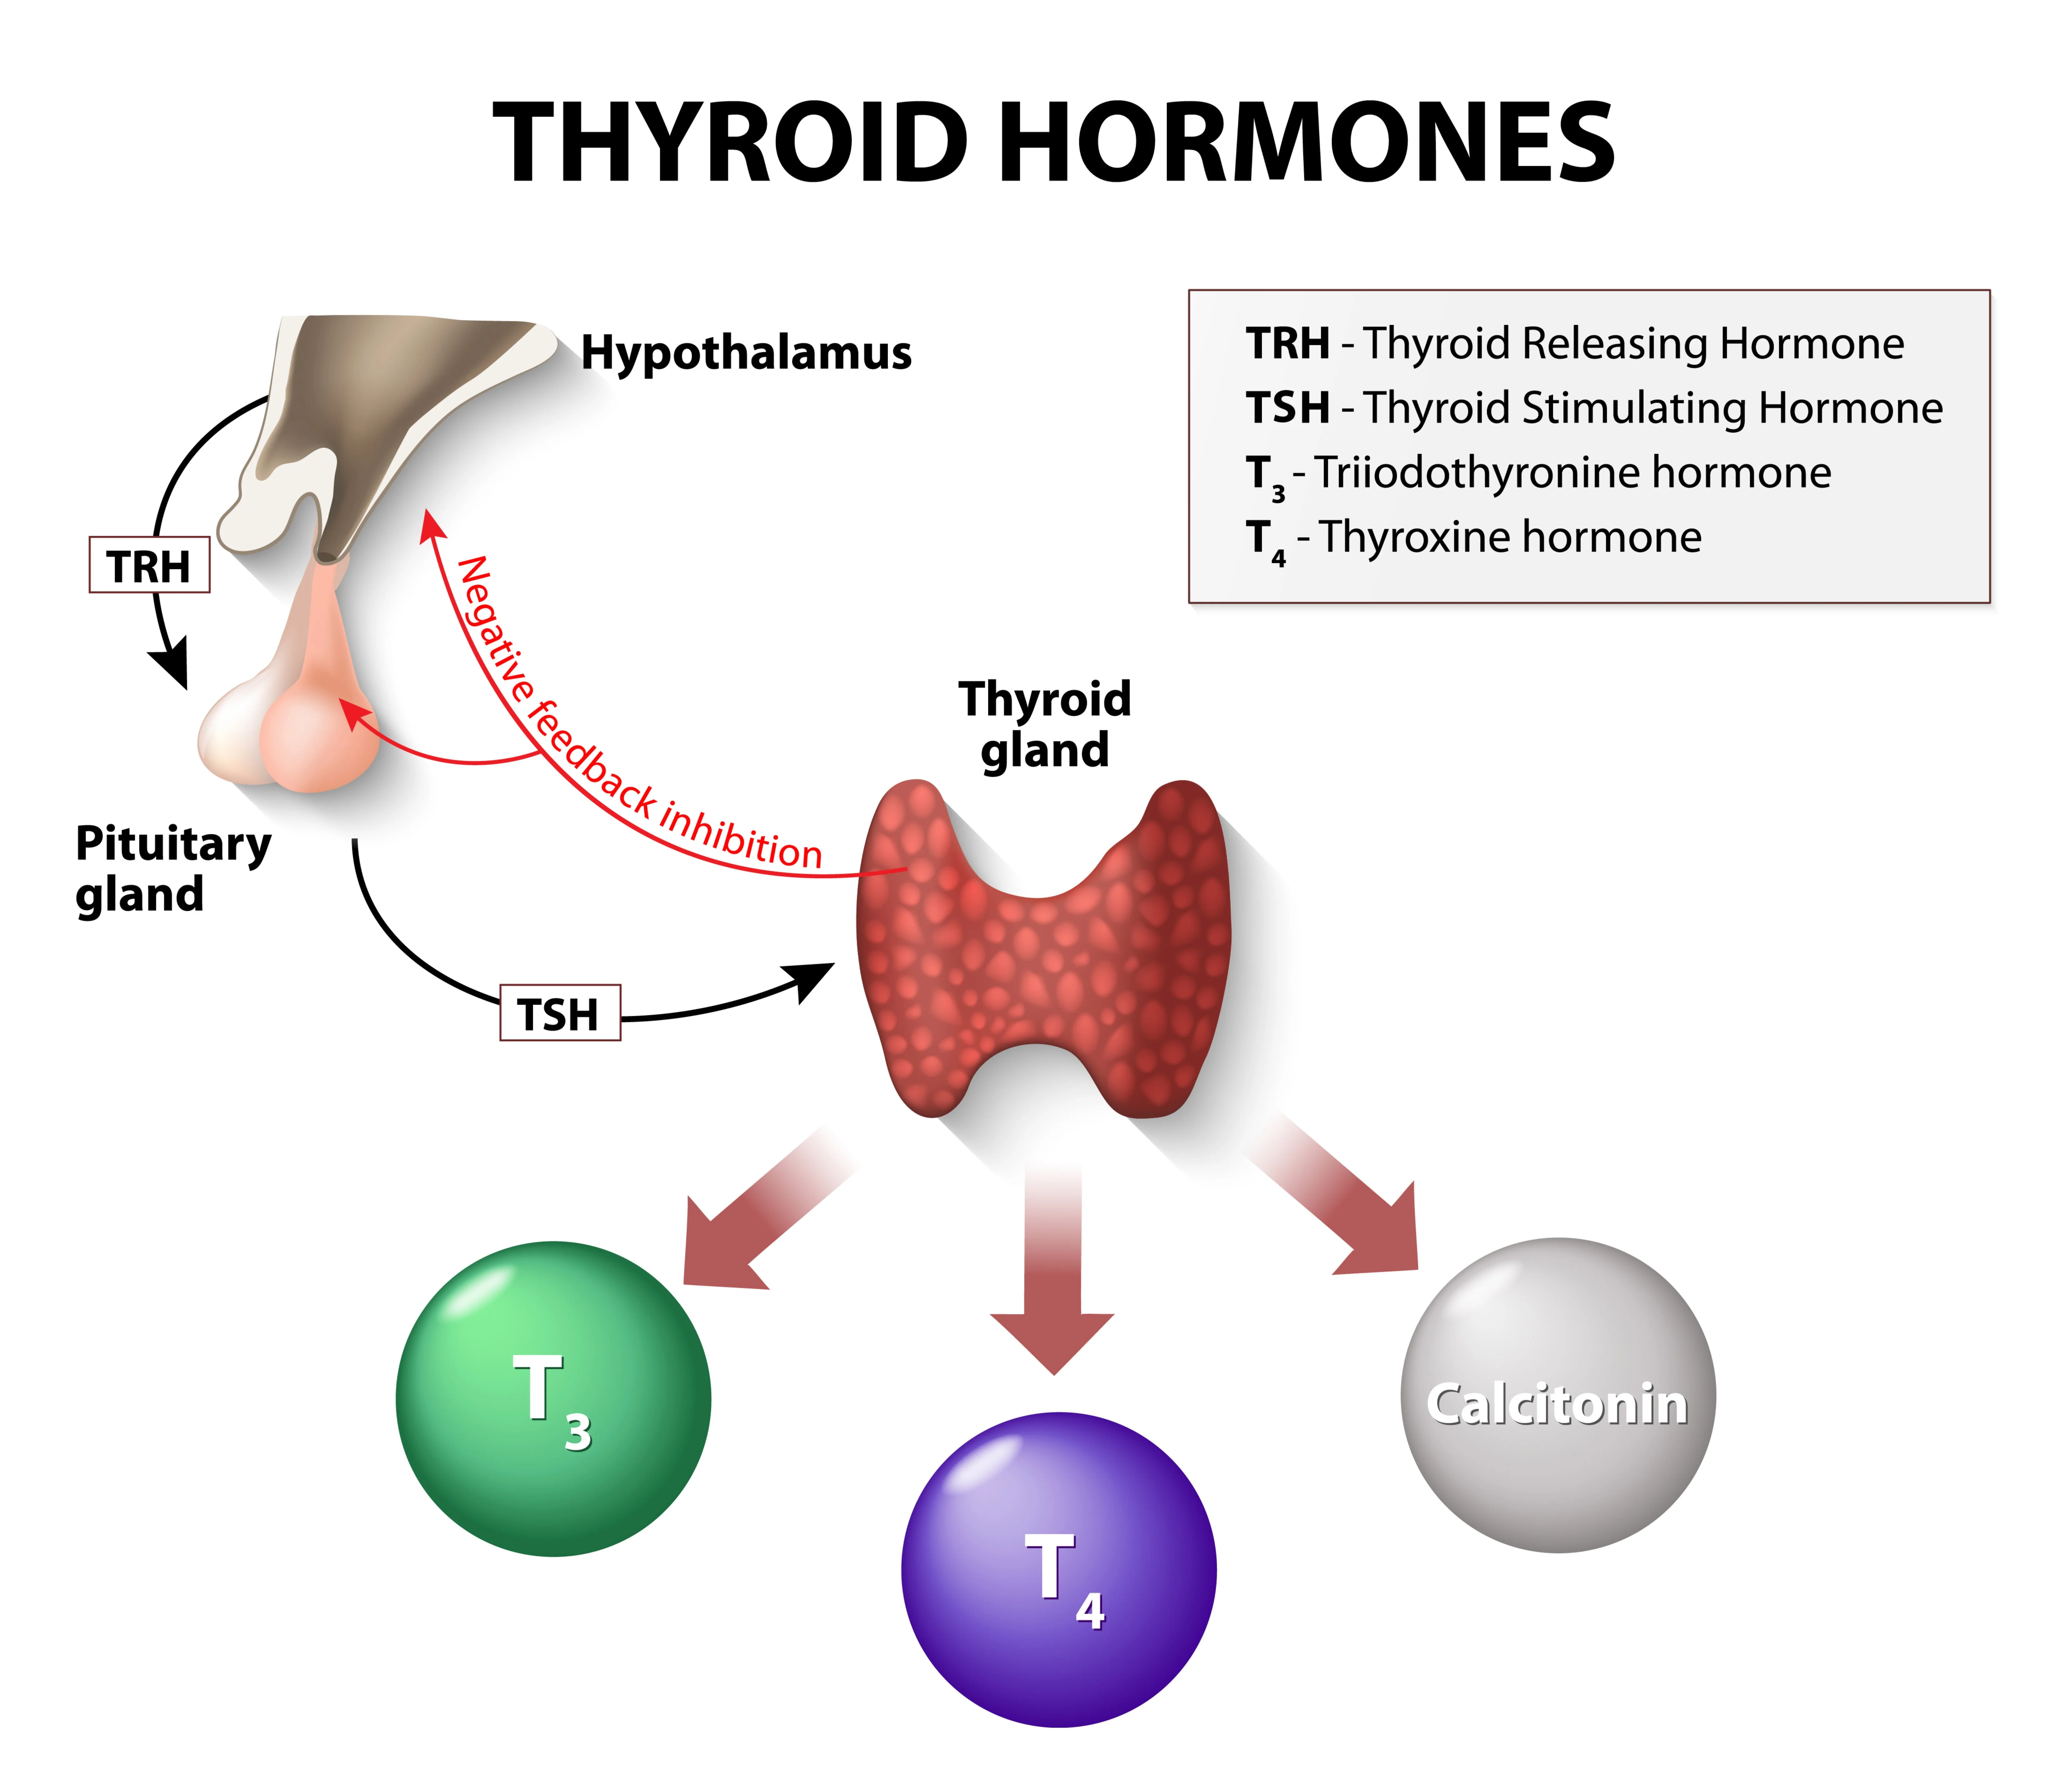 甲状腺是頸部前面的蝴蝶状器官，可分泌两种激素：三碘甲状腺原氨酸 (T3) 和甲状腺素 (T4)。这些激素调节你身体的新陈代谢，将食物转化为能量。甲状腺由脑垂体产生的促甲状腺激素 (TSH) 控制。